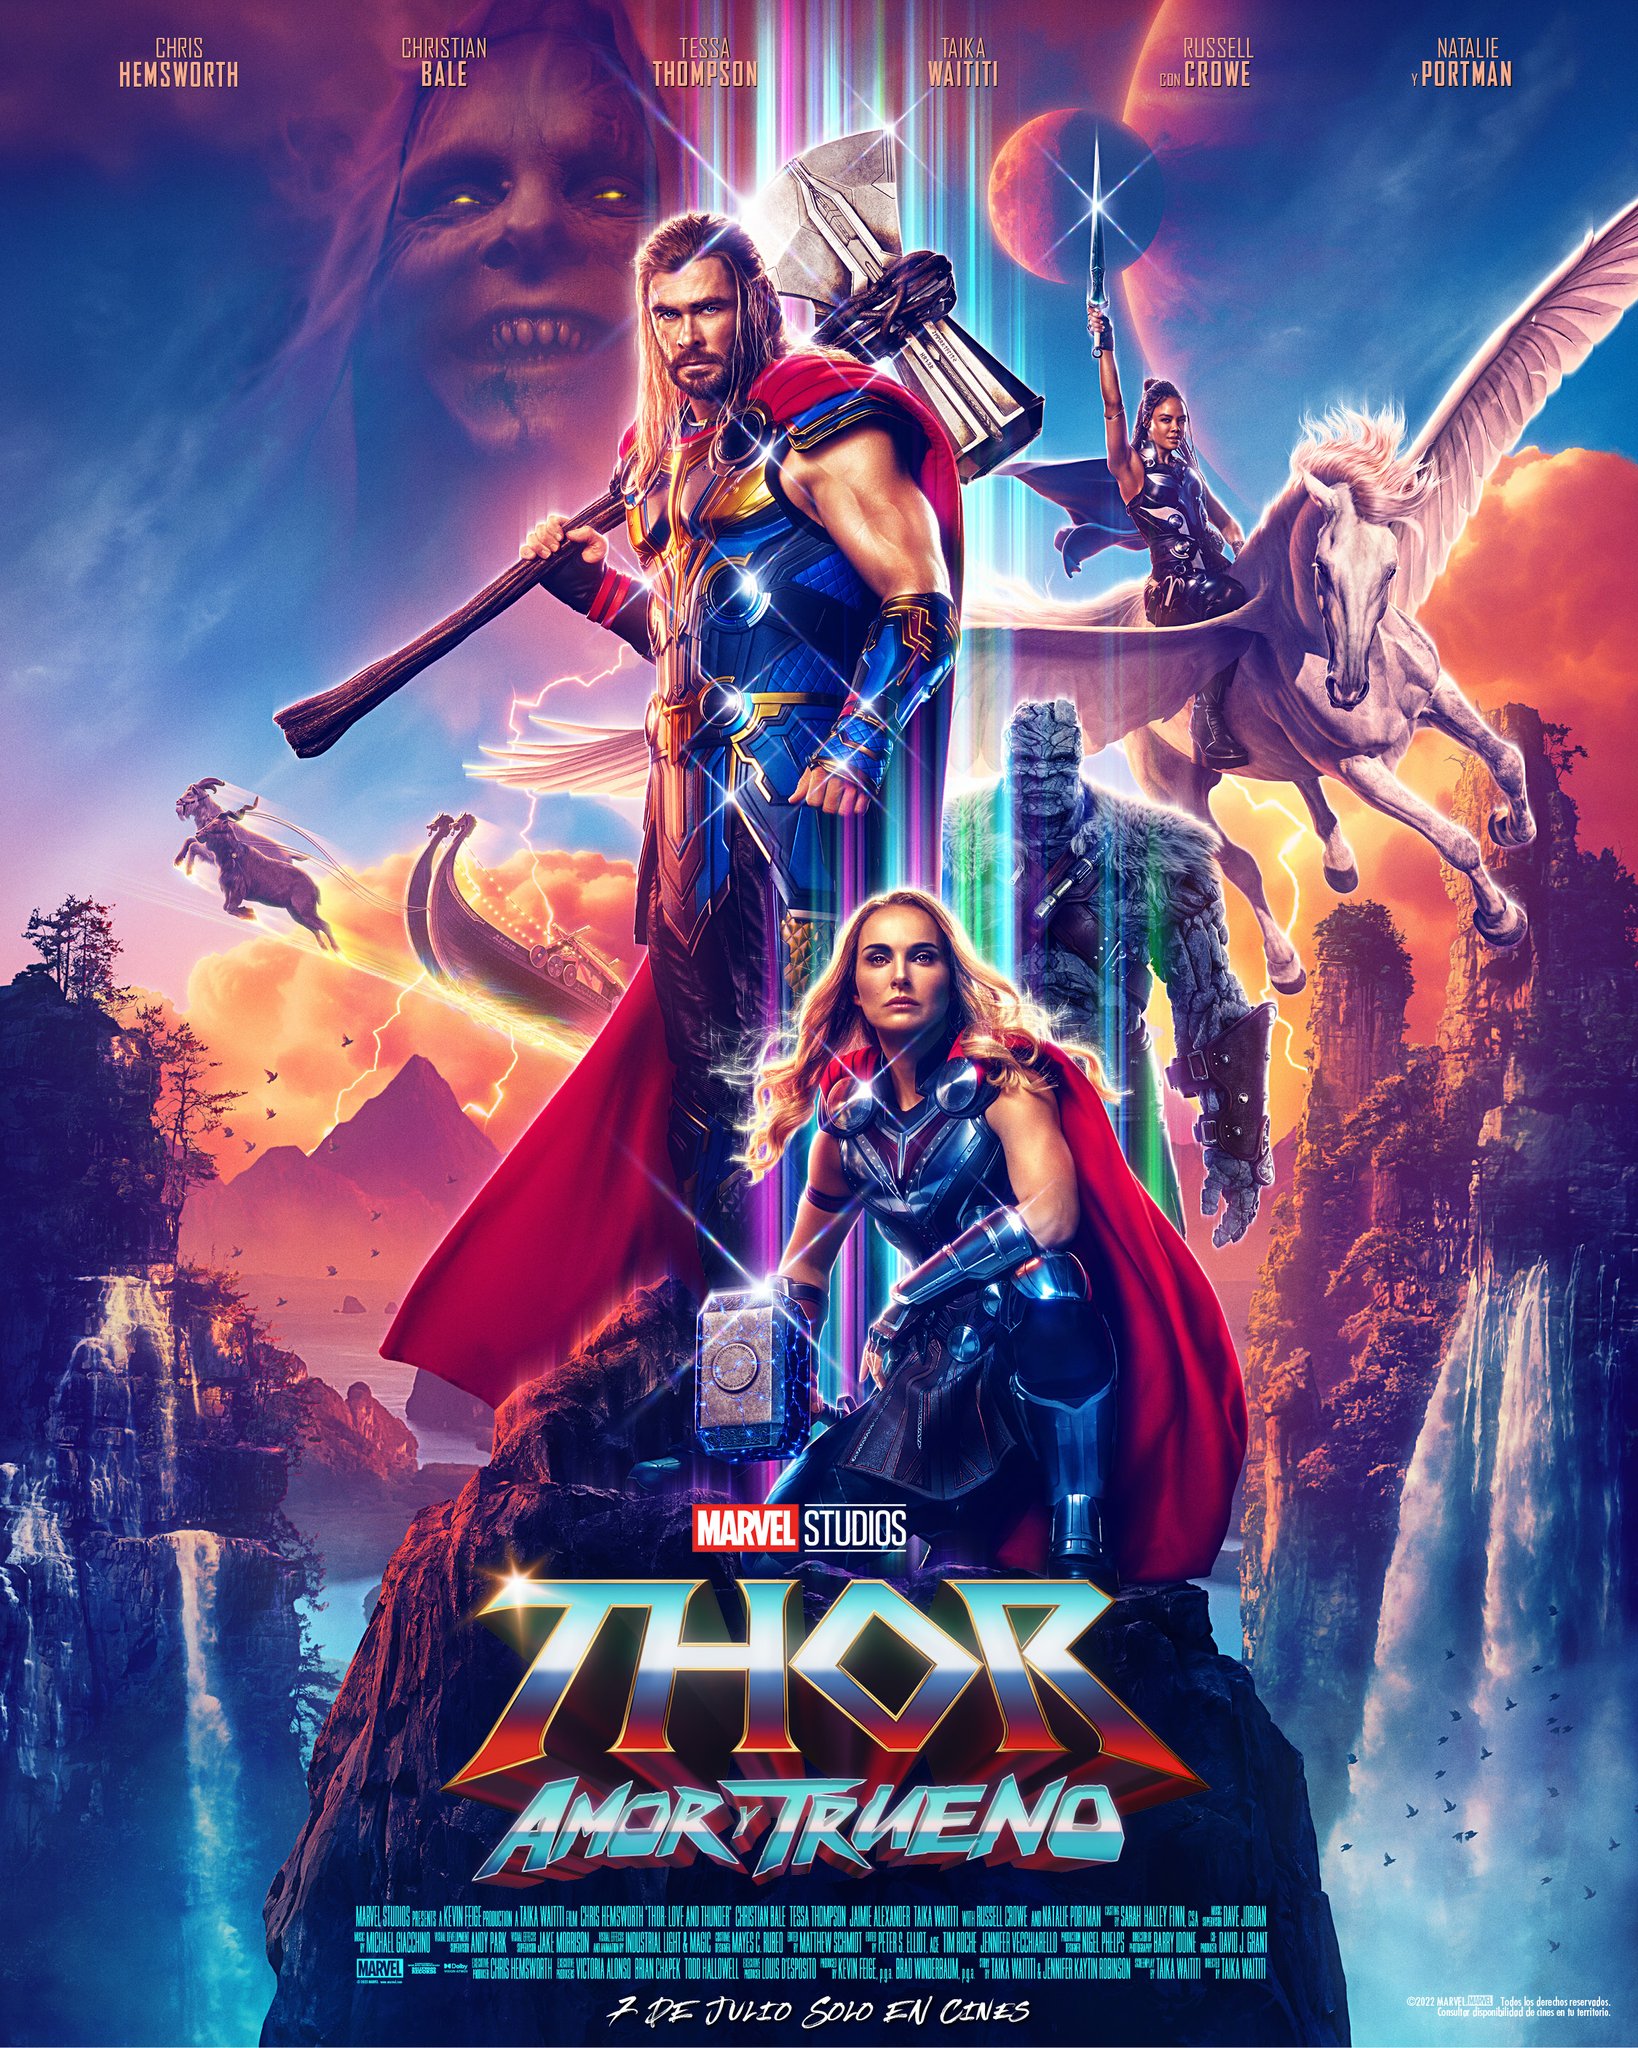 MarvelLATAM on Twitter: "Él y ella ❤️ Mira el nuevo póster de #Thor: Amor y Trueno, estreno 7 de julio, solo en cines. Consulta por funciones con subtítulos descriptivos en tu ciudad.